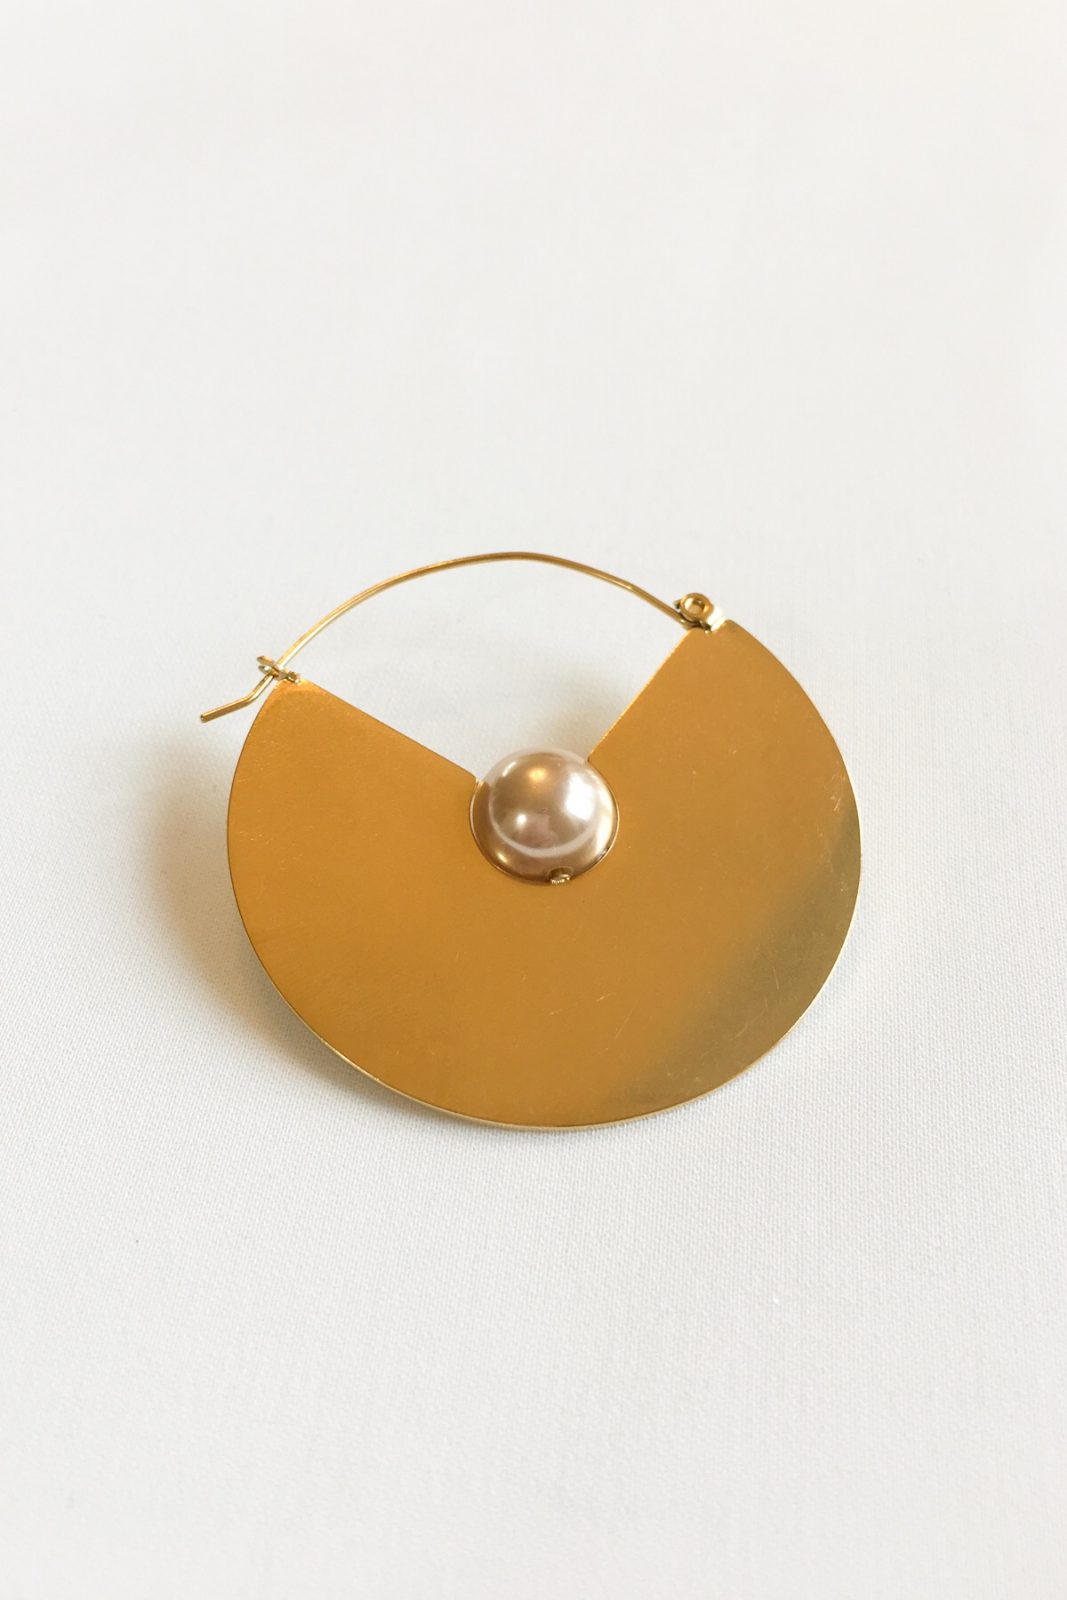 SKYE modern minimalist women fashion accessories Chevelle 18K Gold Pearl Earrings 4